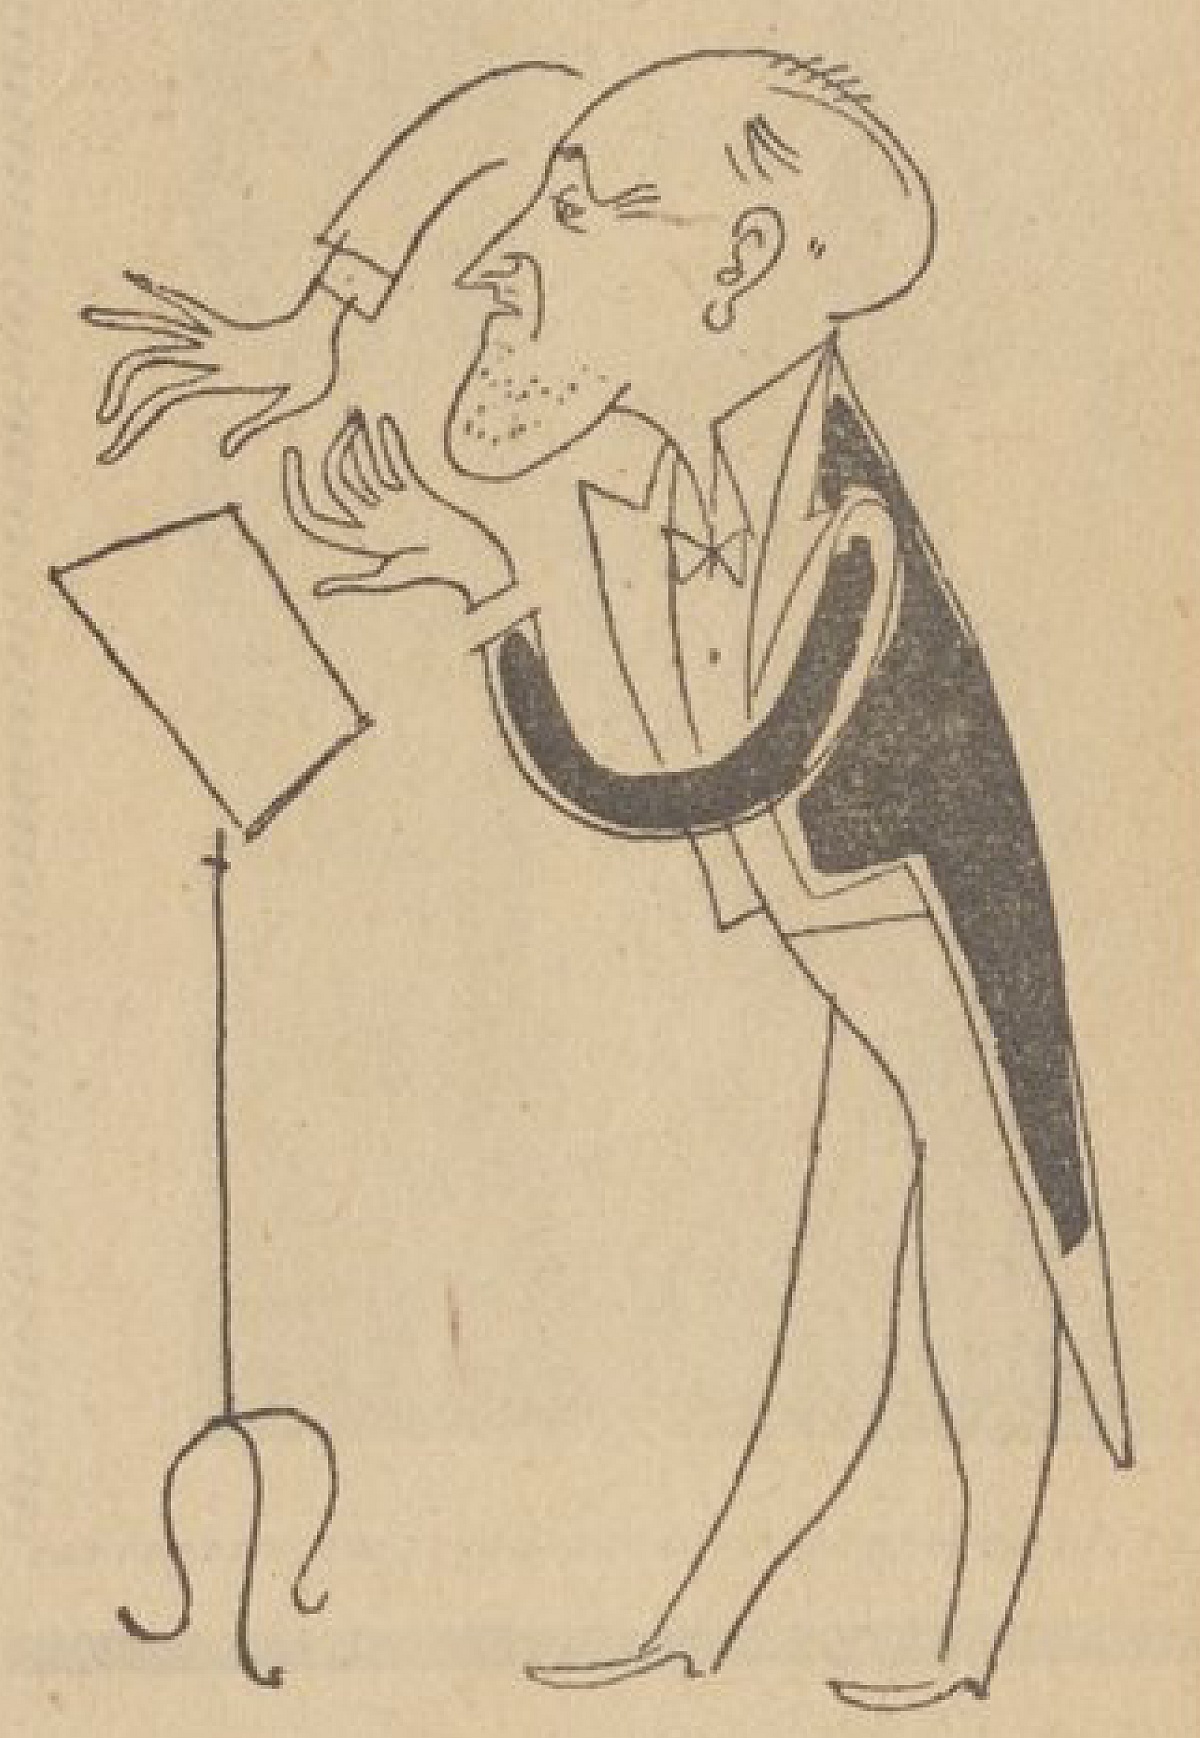 Ernest Ansermet «croqué» par le dessinateur Vary en 1946, dessin paru dans un quotidien parisien - Cliquer sur la photo pour l'original et ses références